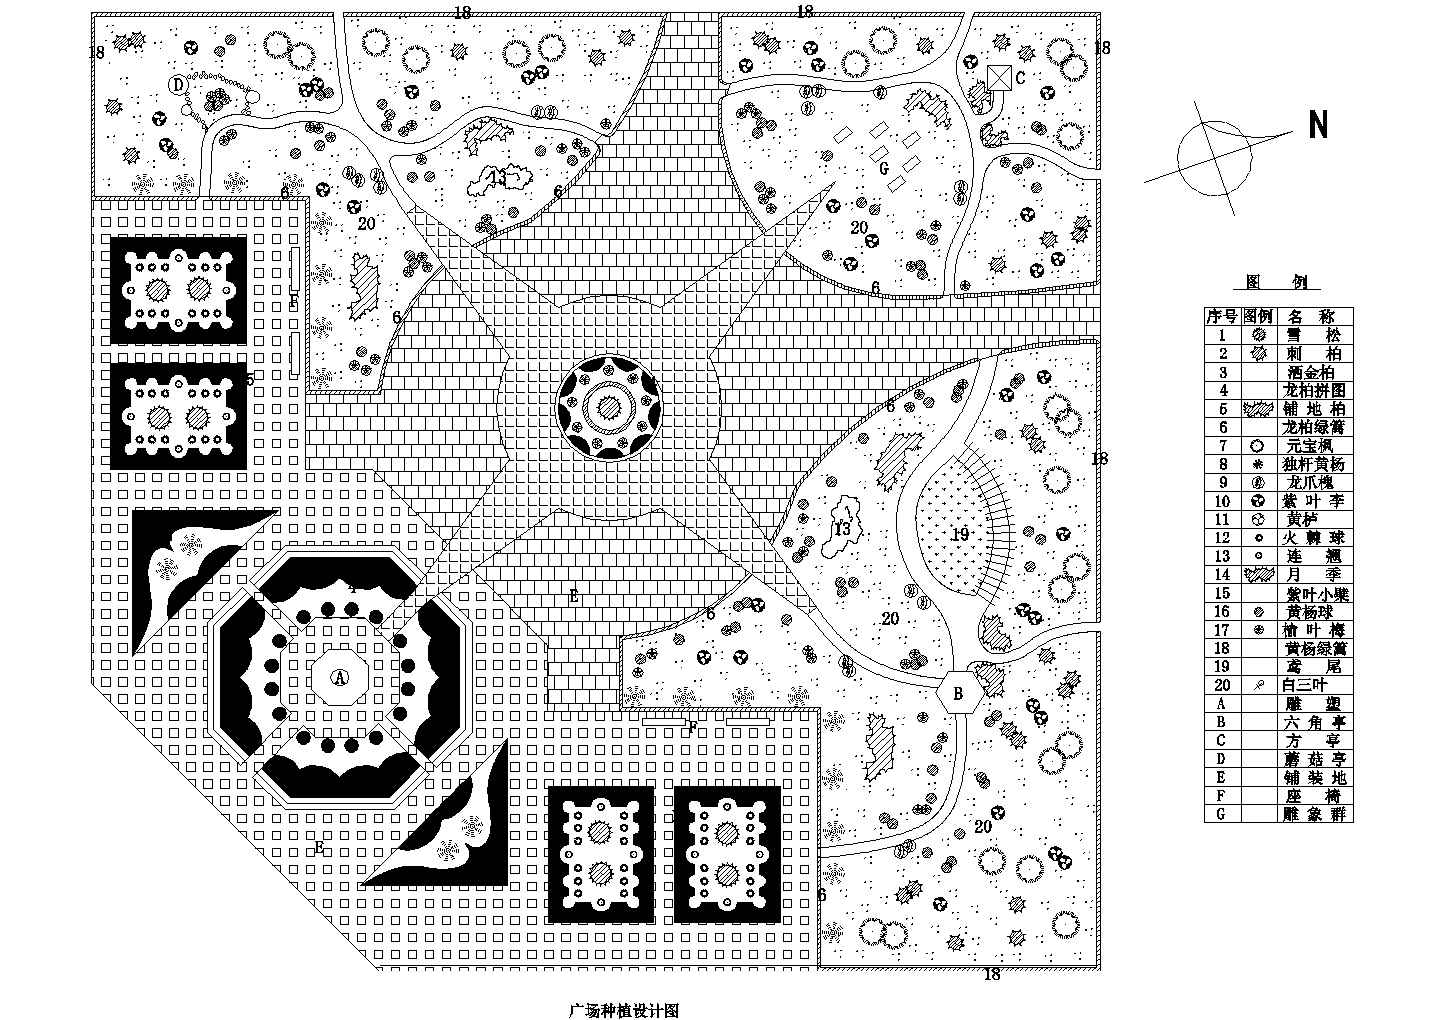 某广场绿化景观种植总规划设计施工详细方案CAD图纸